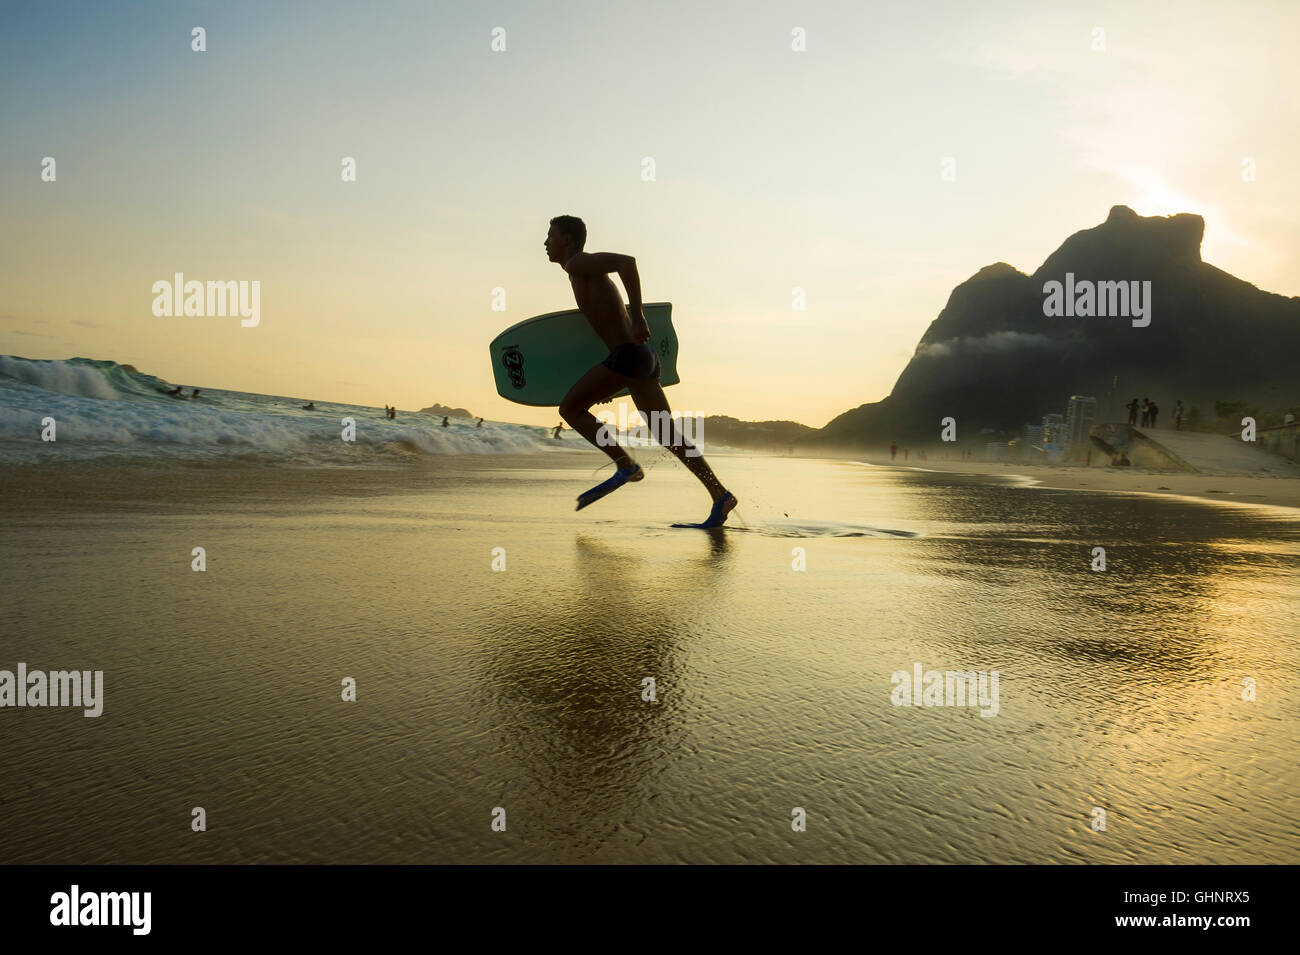 RIO DE JANEIRO - mars 8, 2016 : Bodyboarder se jette dans les vagues sur la plage de São Conrado sous un coucher de soleil silhouette. Banque D'Images